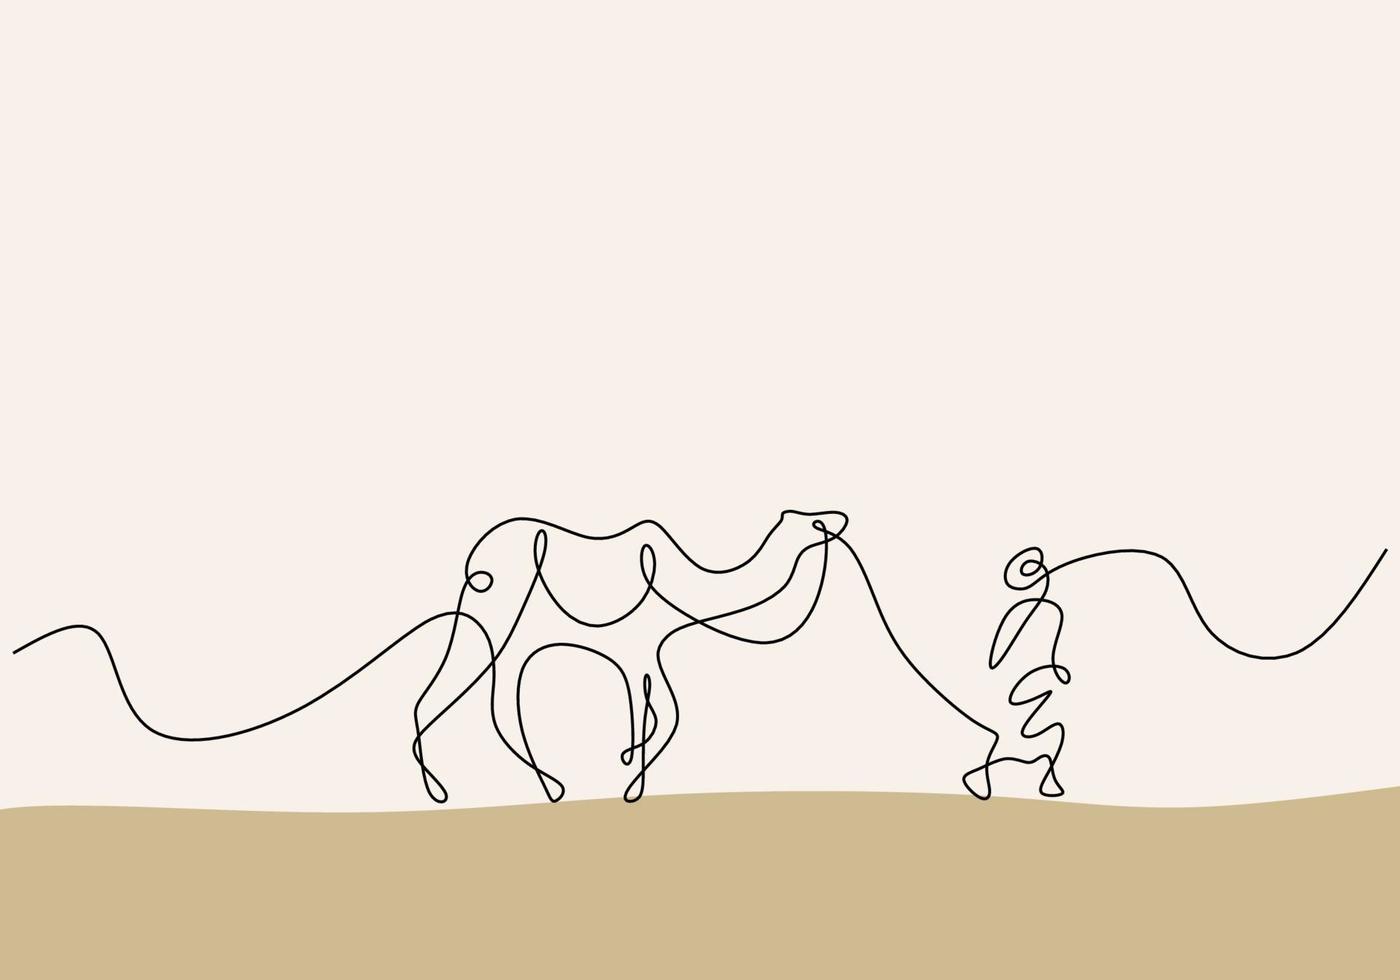 dibujo continuo de una línea de un hombre con camello en el desierto vector